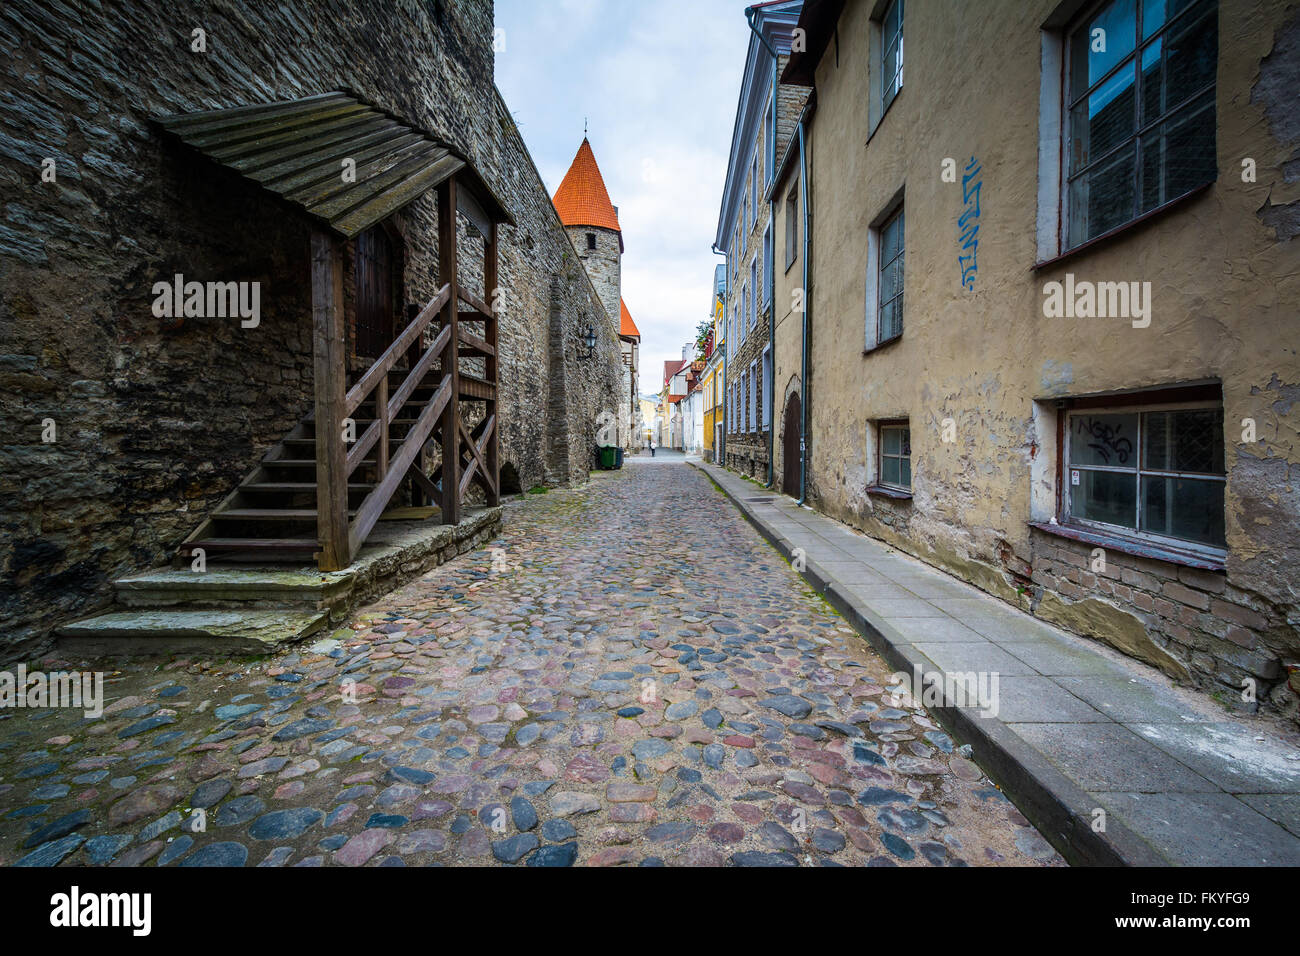 Gepflasterten Straße und mittelalterlicher Architektur in der Altstadt von Tallinn, Estland. Stockfoto